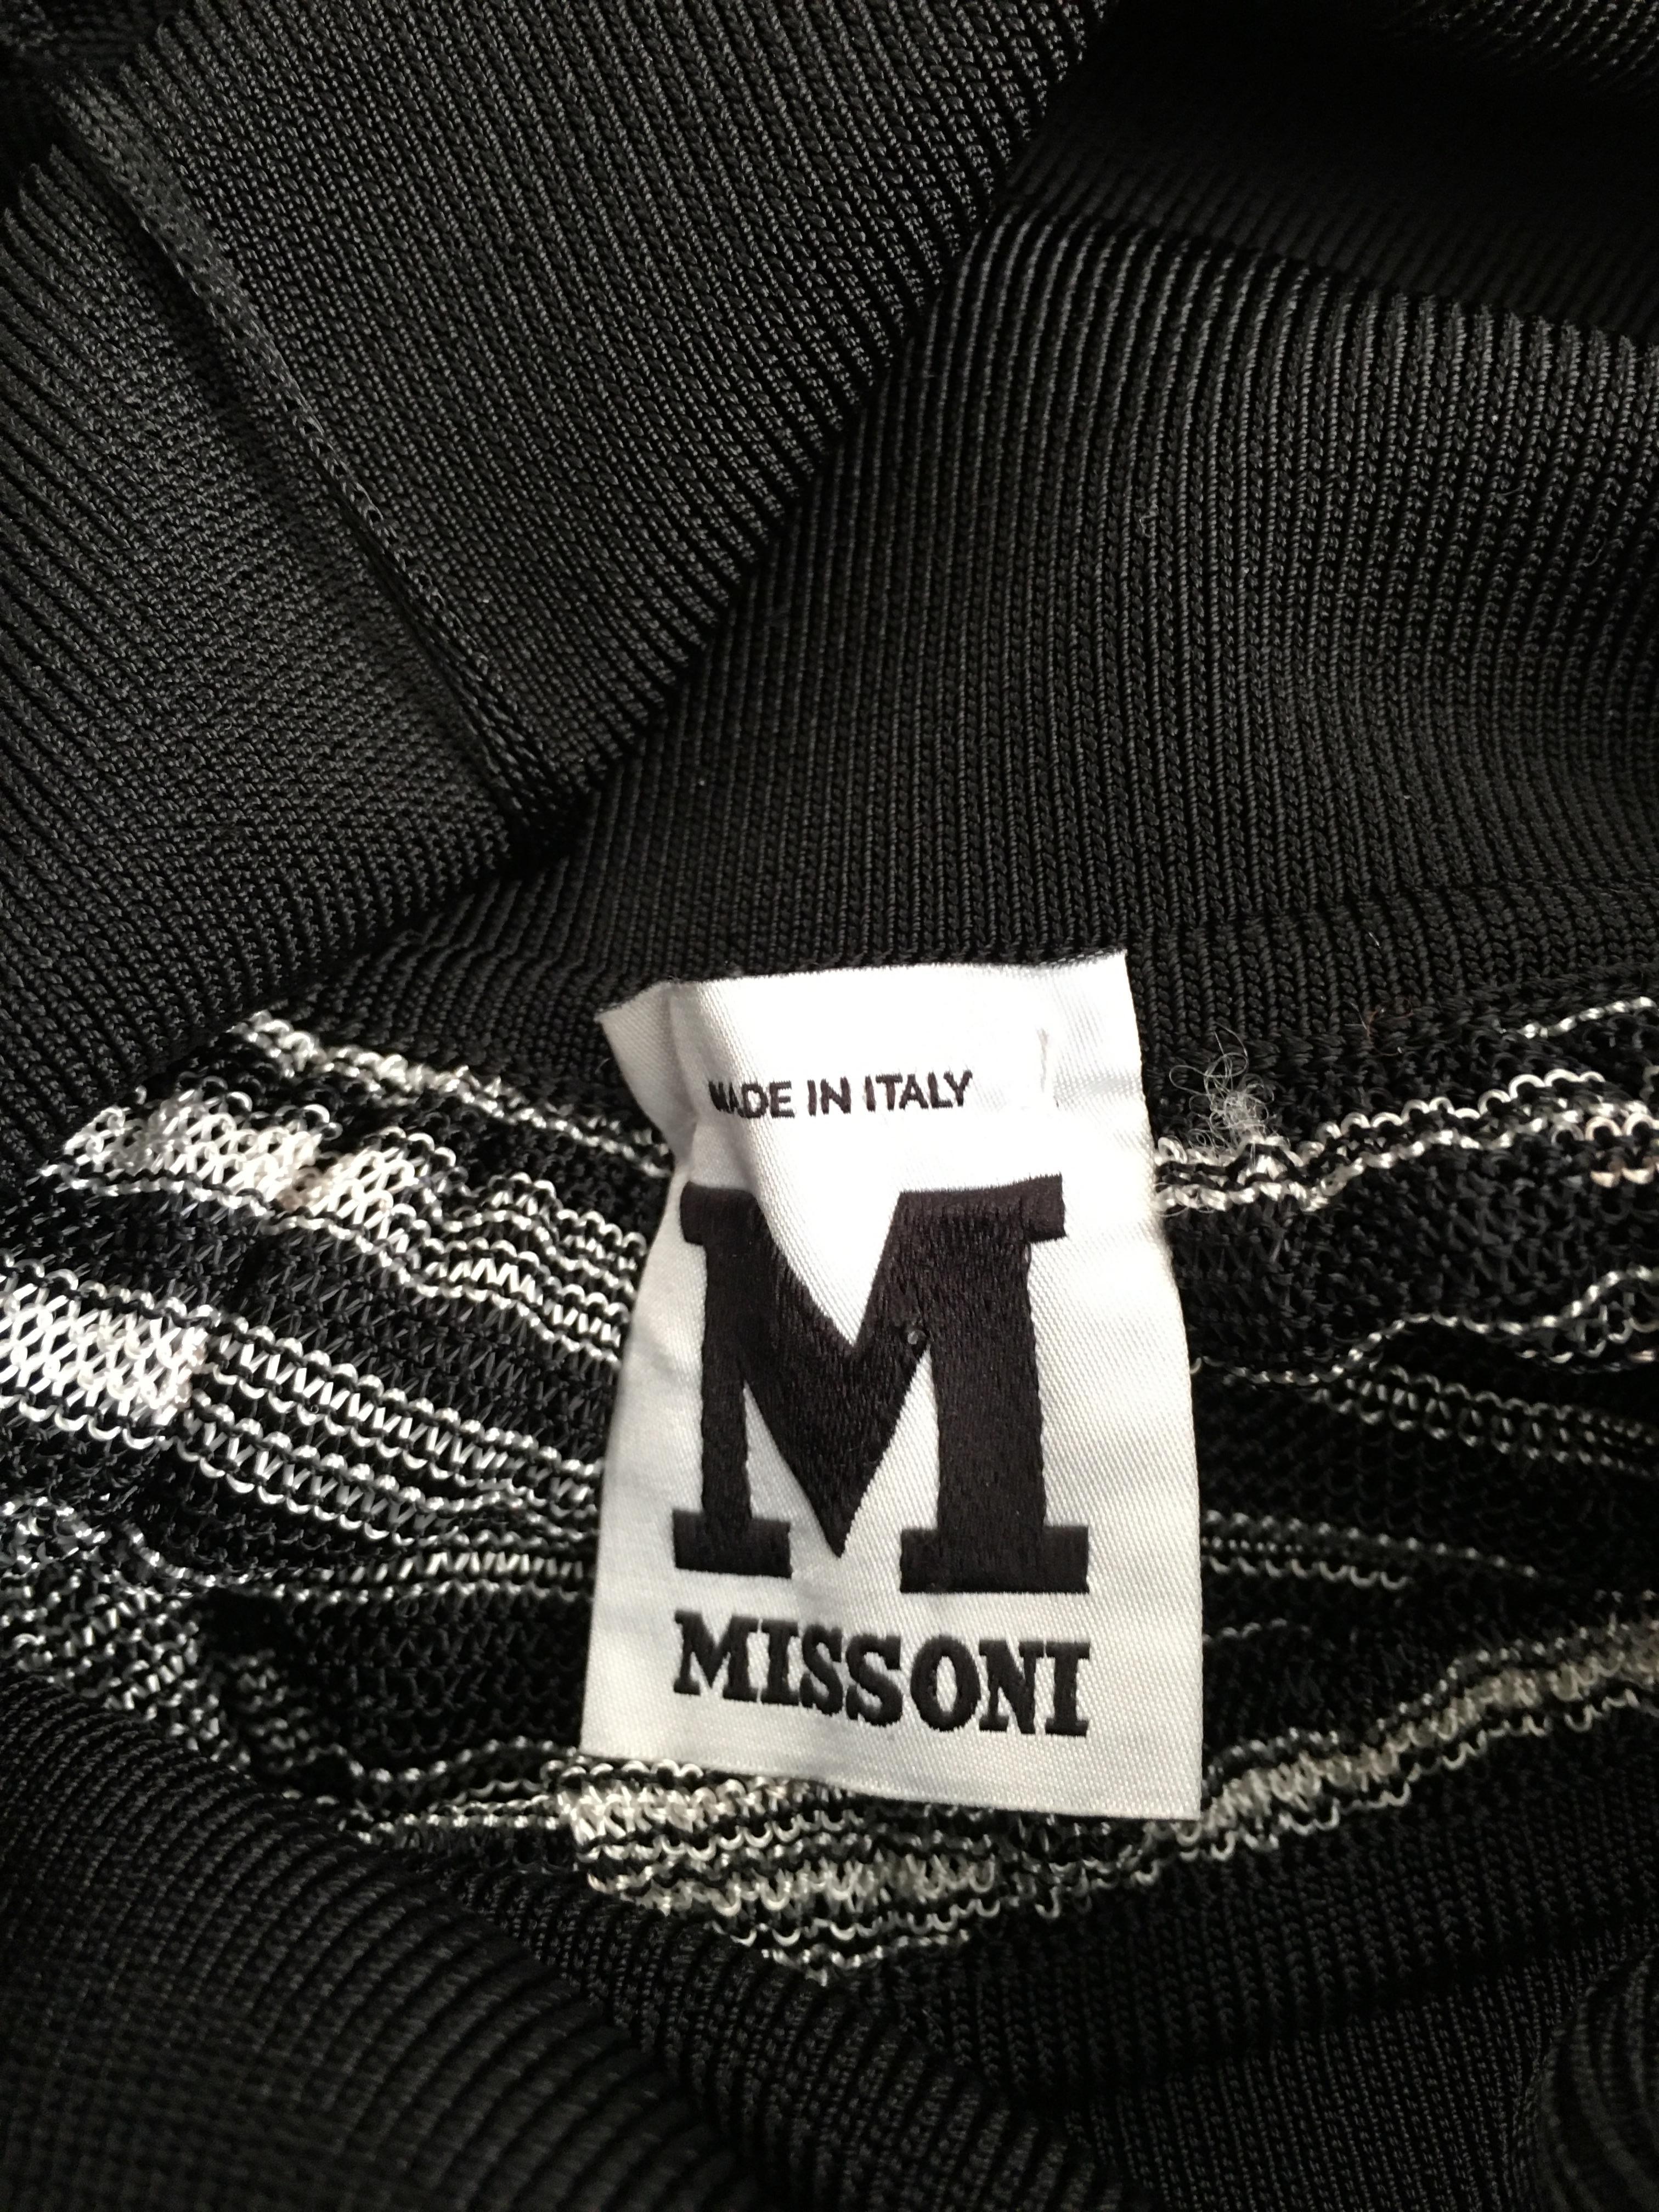 Missoni Lace Black and White Spaghetti Strap Maxi Dress For Sale 12